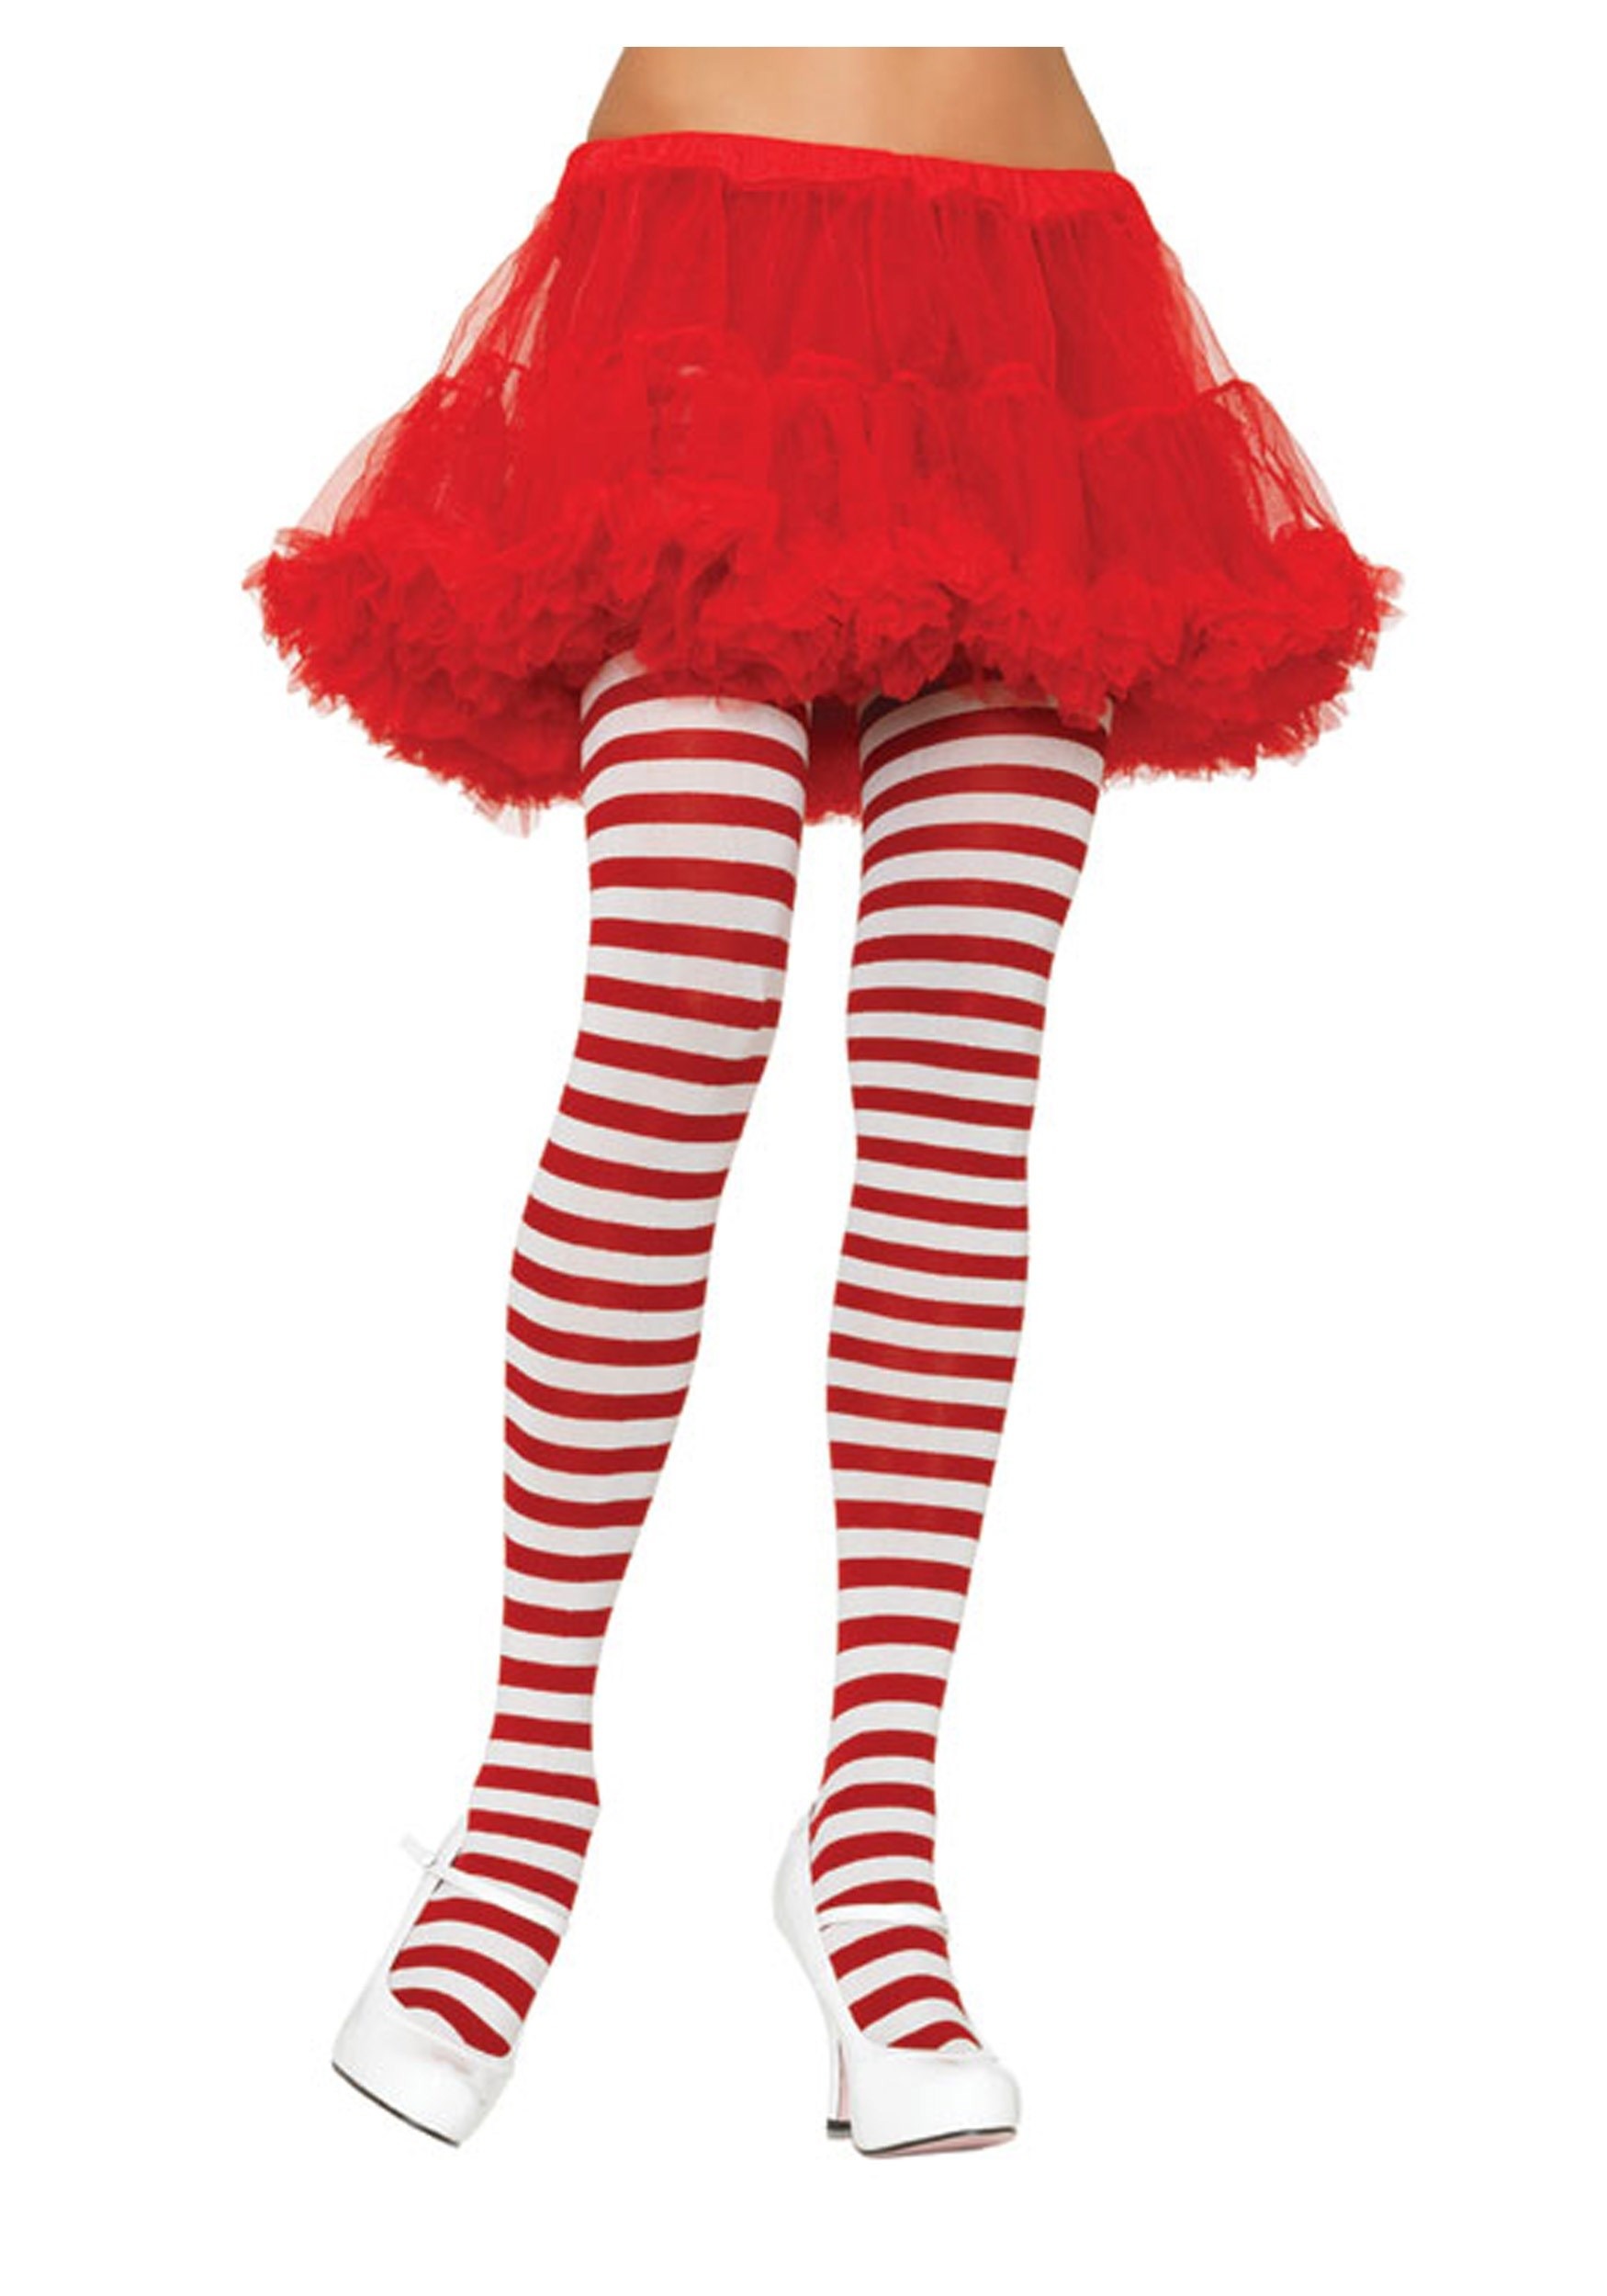  Medium Red & White Striped Ladies Pantyhose : Clothing